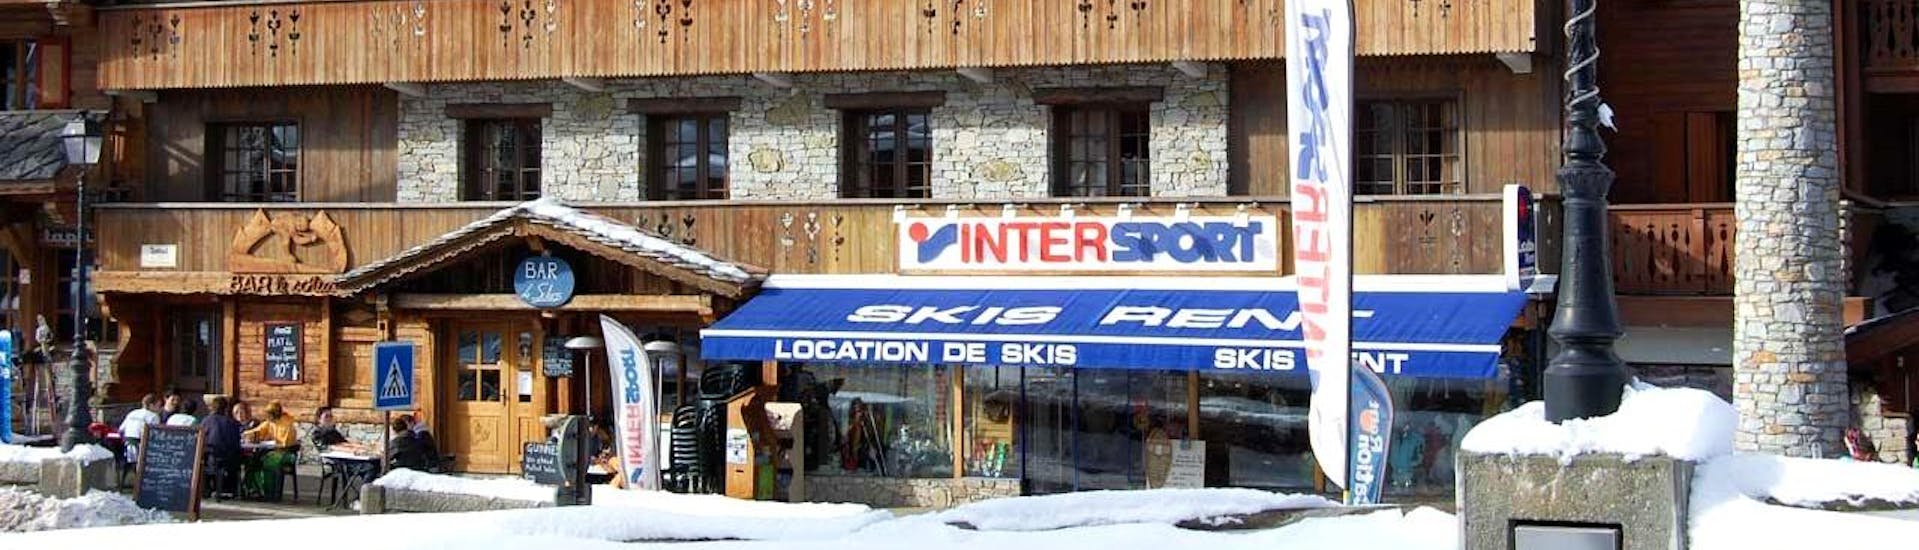 Une photo de la devanture du magasin de location de ski Intersport à Courchevel 1650 en France.